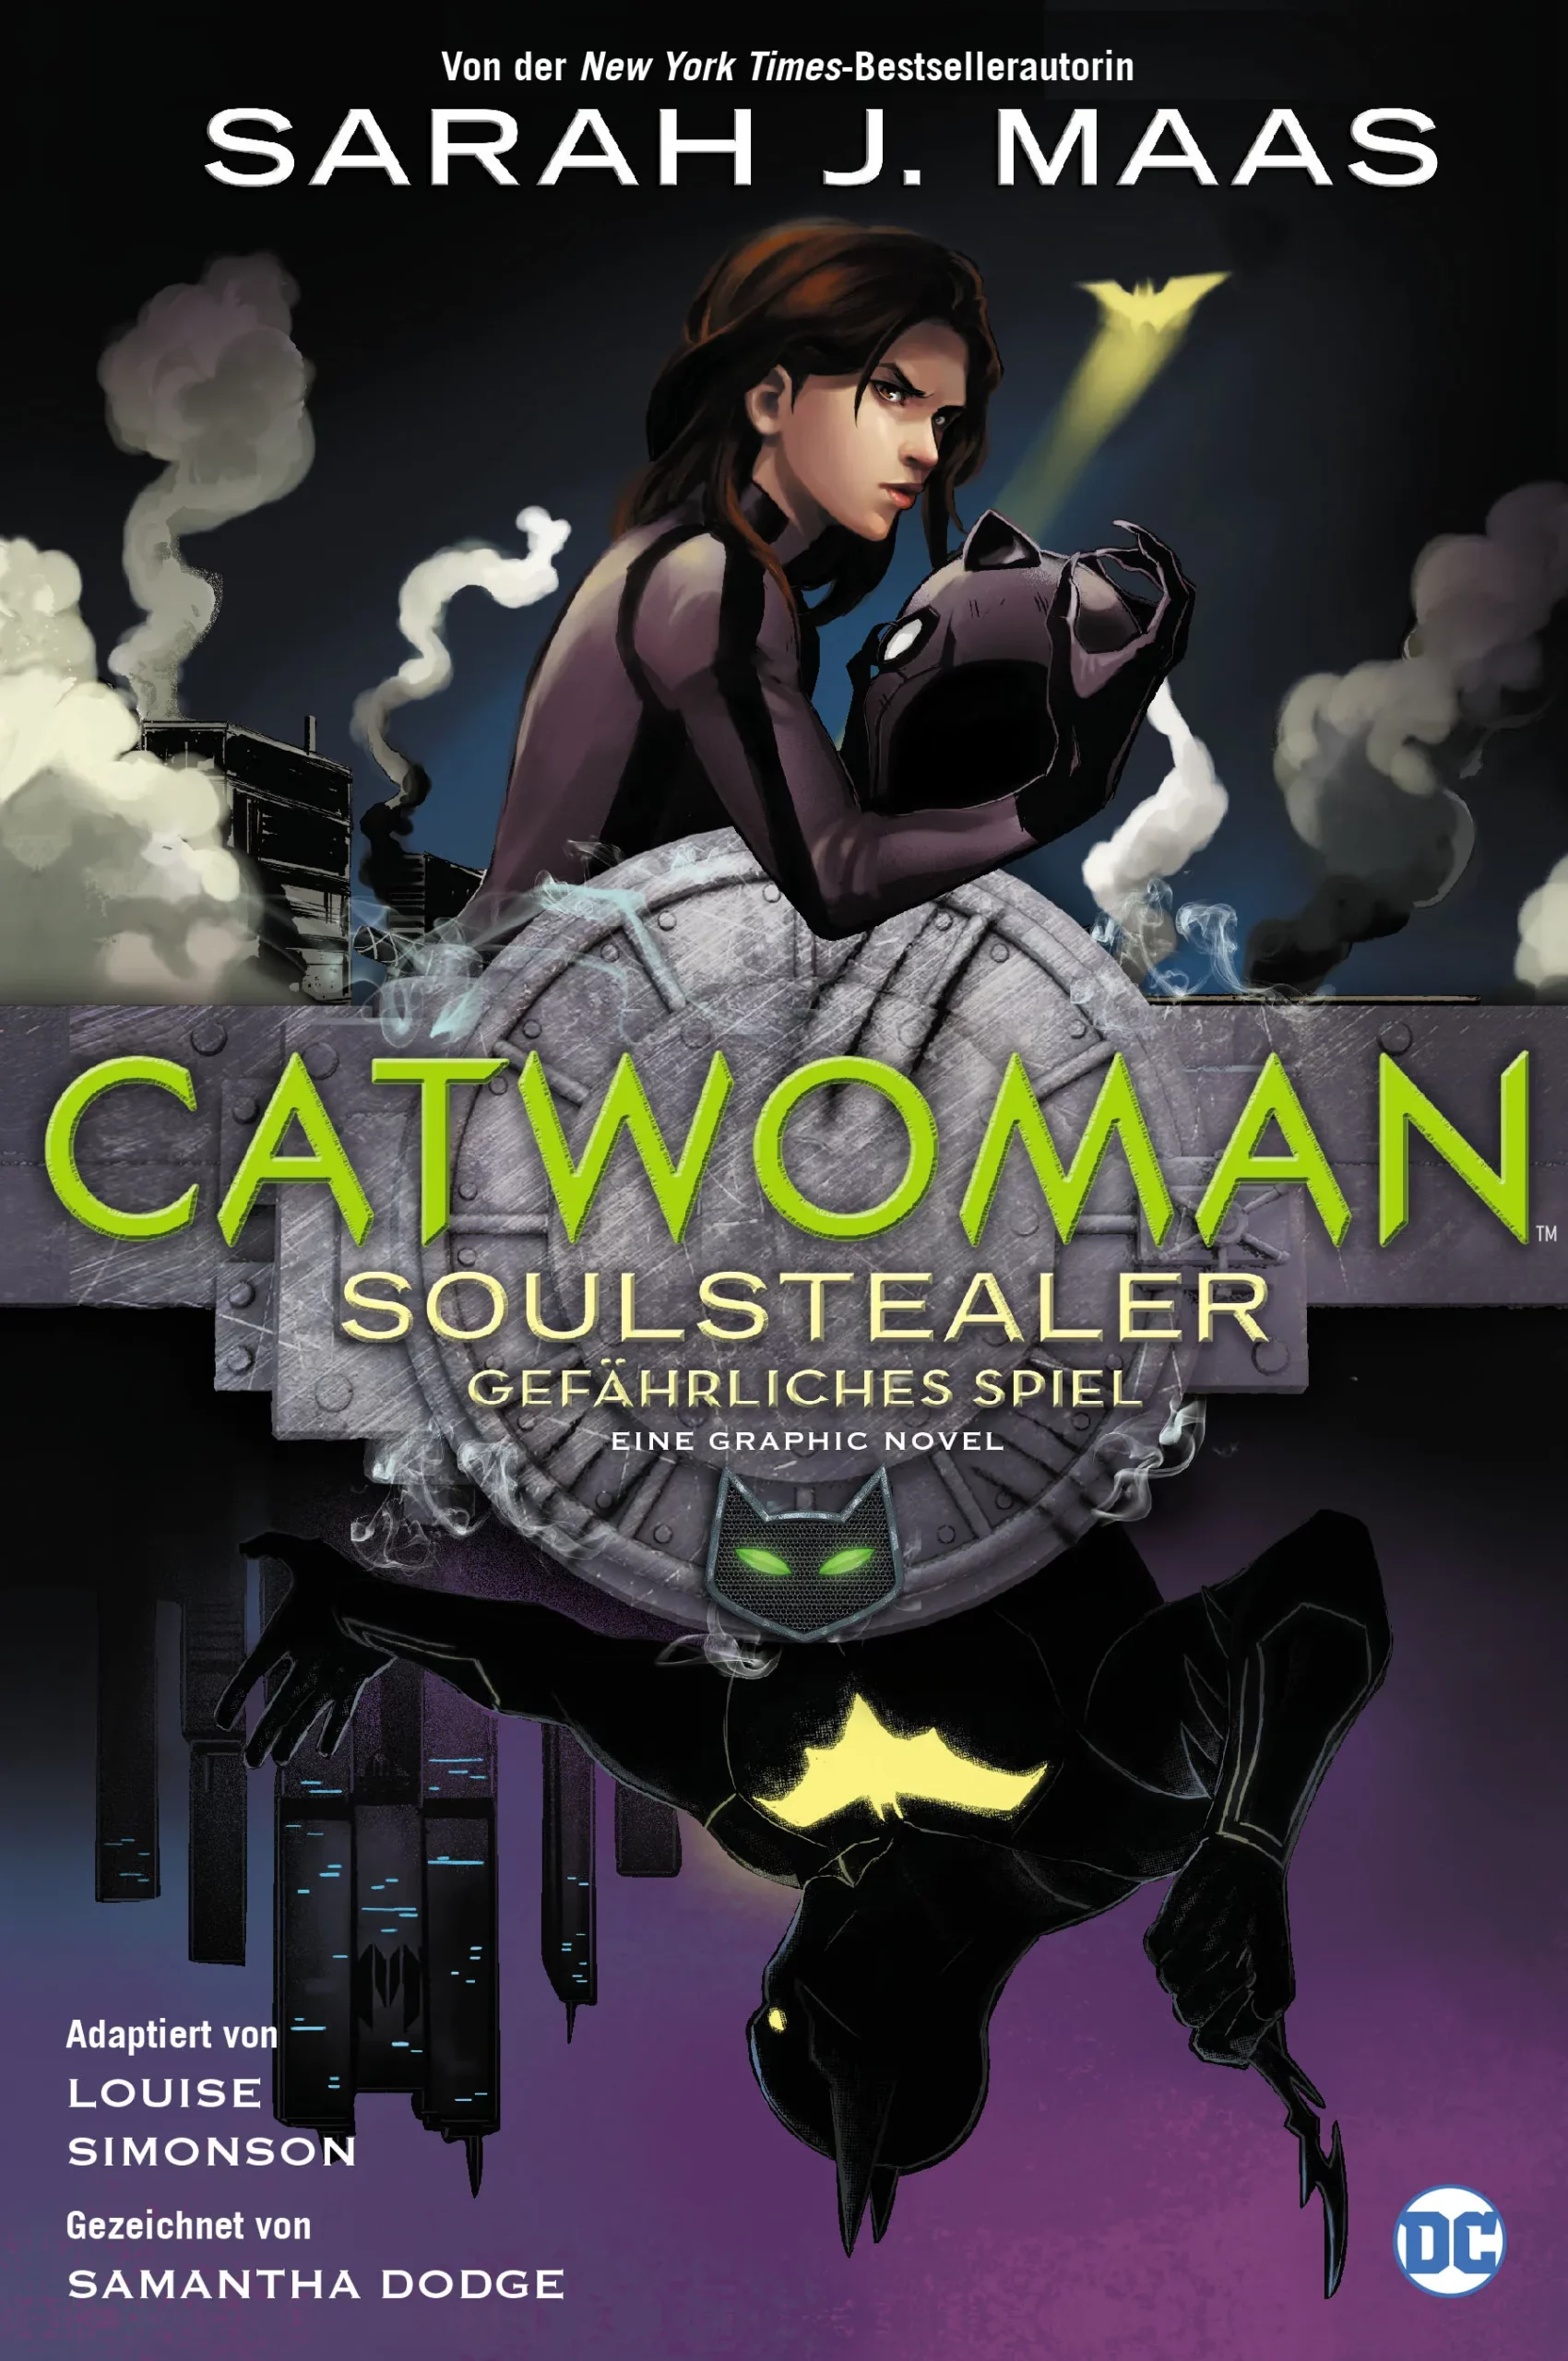 Catwoman: Soulstealer – Gefährliches Spiel